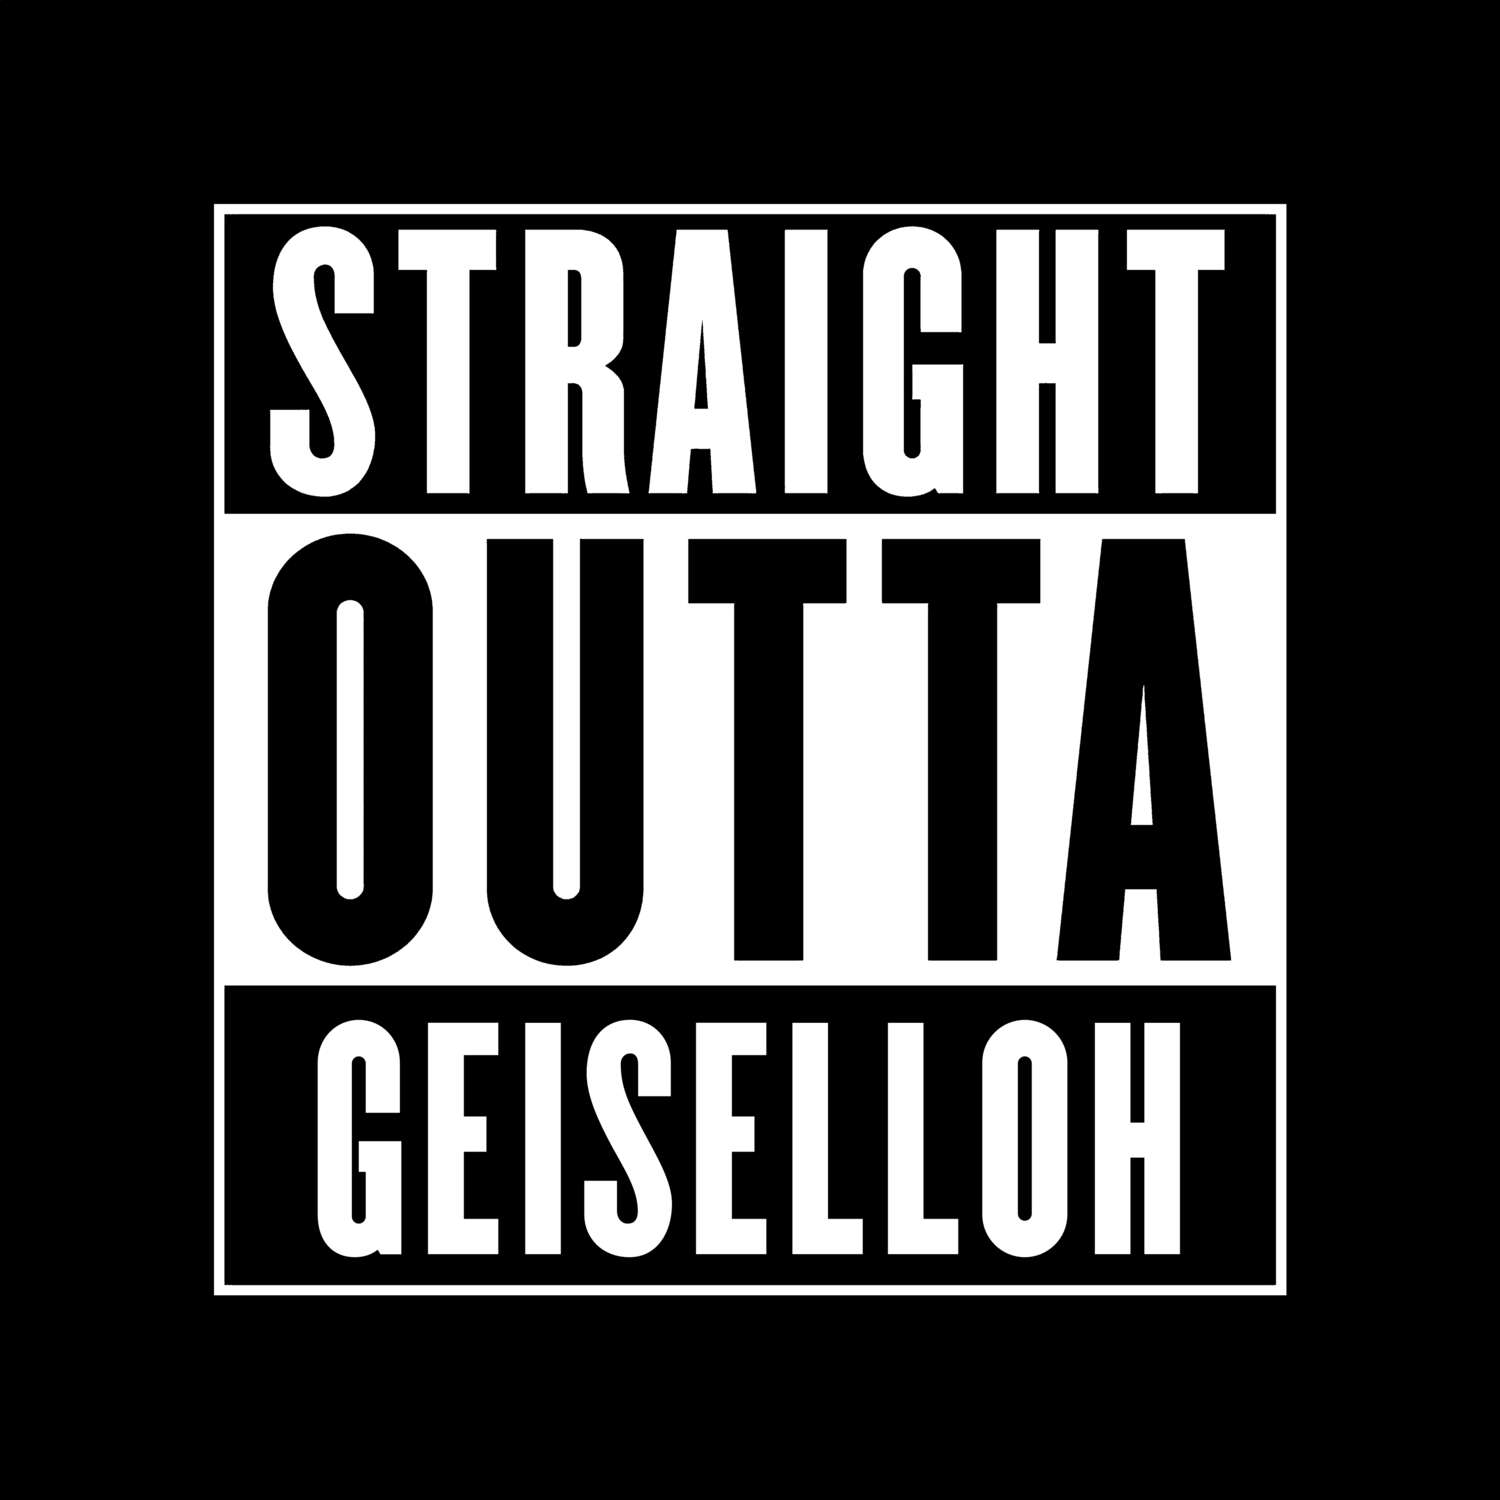 Geiselloh T-Shirt »Straight Outta«